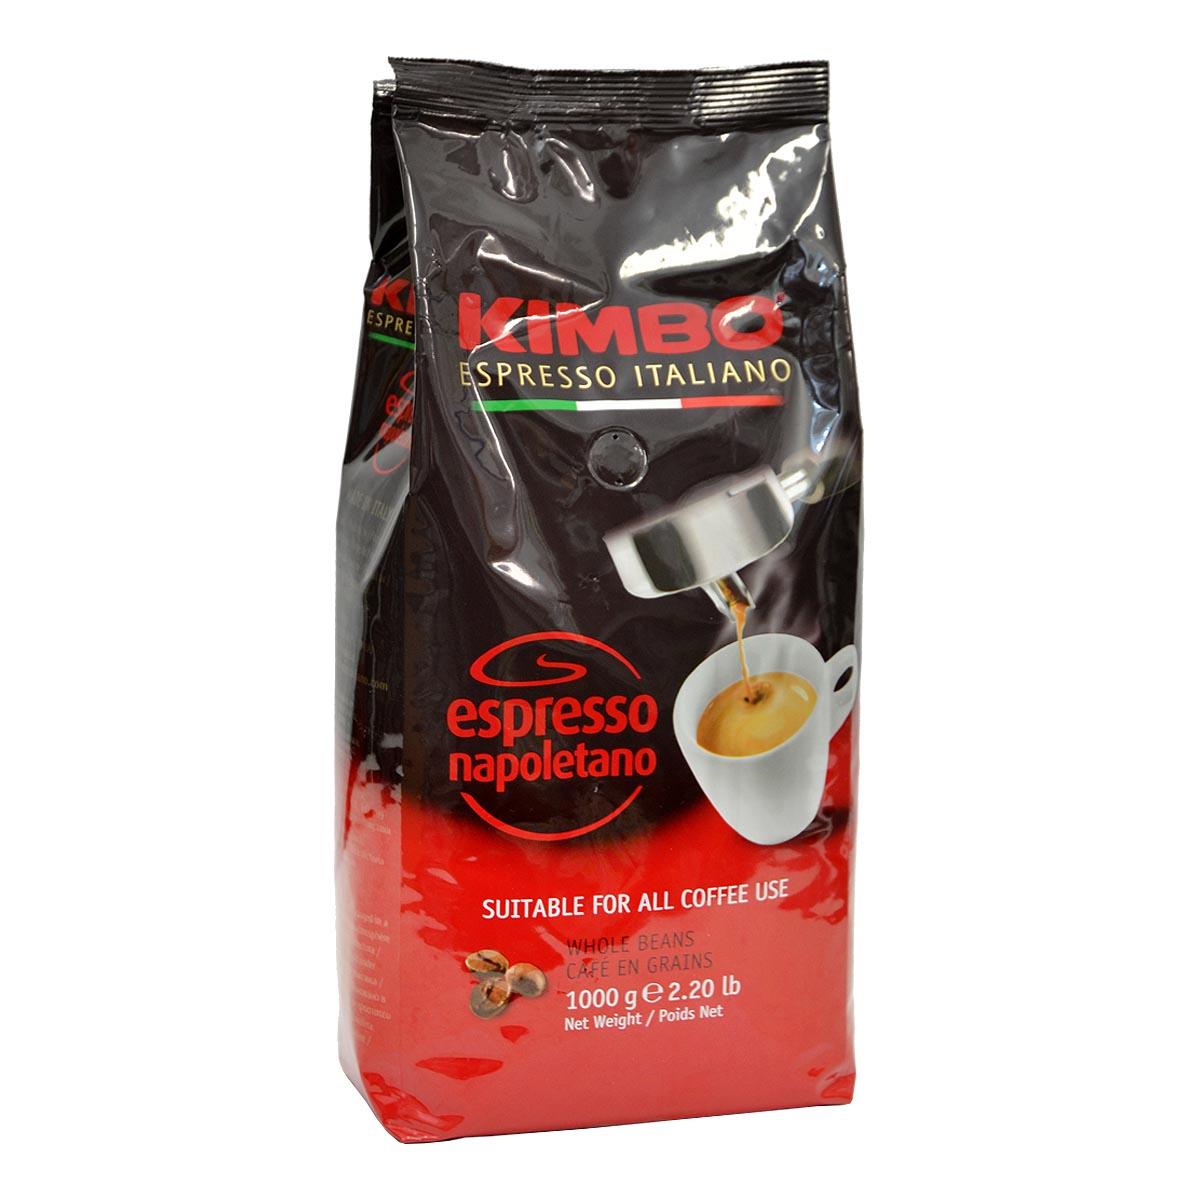 Lavazza Caffe Crema Gustoso (1kg Coffee Beans) - MyCoffeeCasa